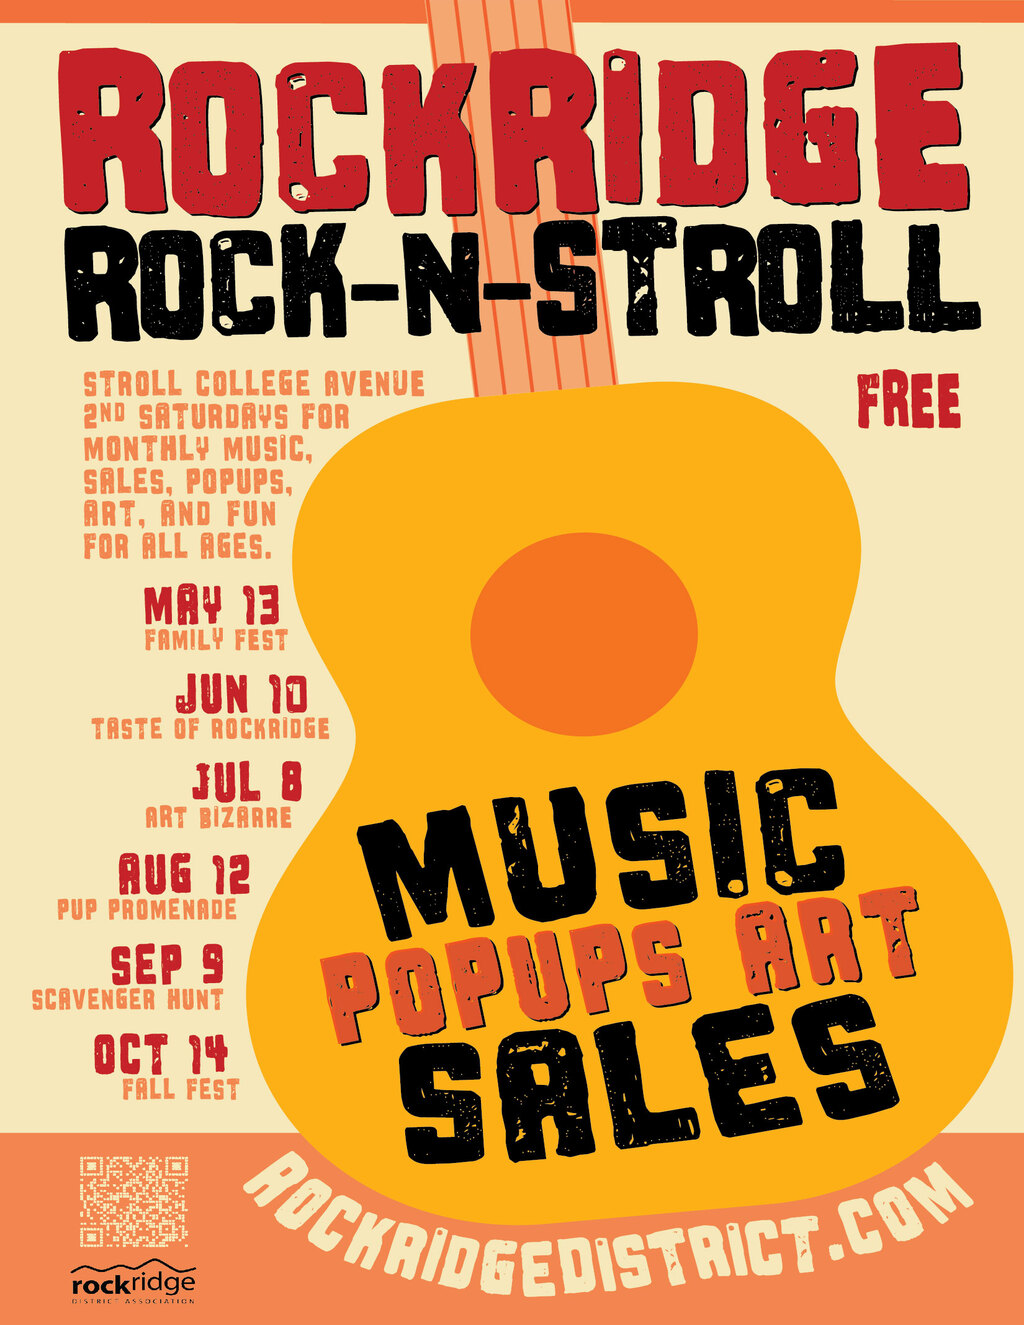  Rock N Stroll 2nd Saturdays in Rockridge promotion flier on Digifli com